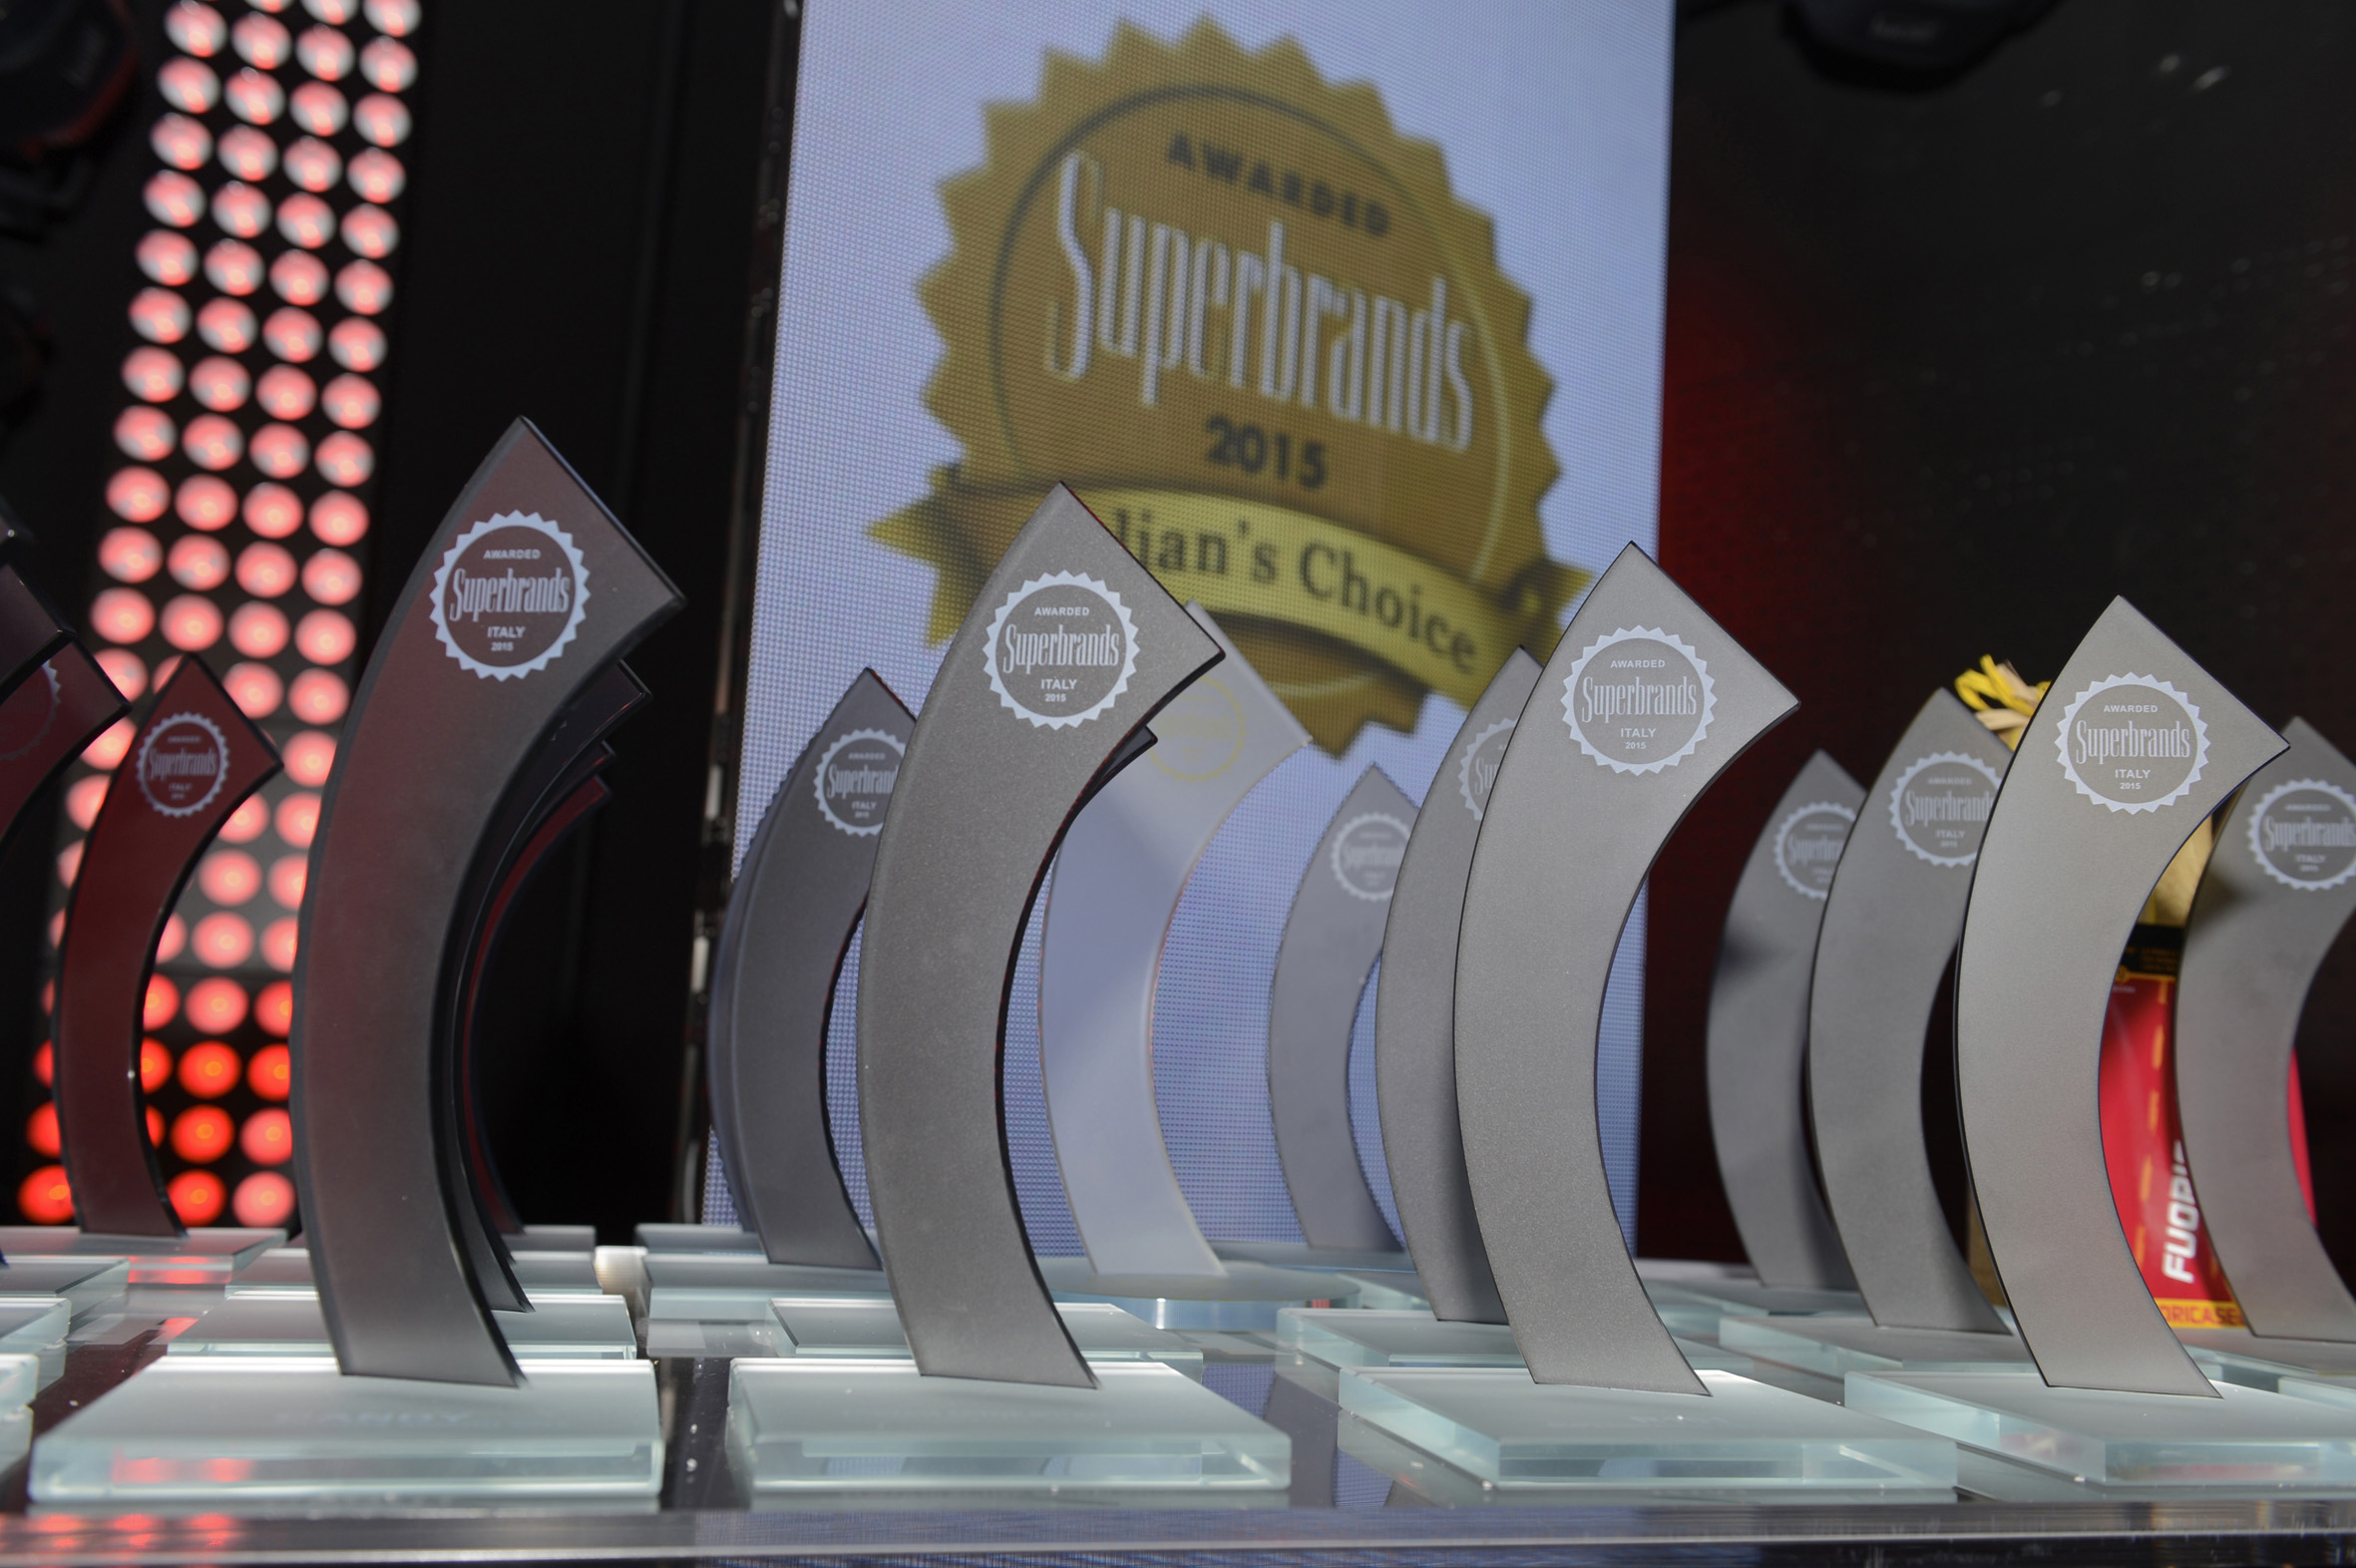 Superbrands Awards 2015, premiata l’azienda di arredamento Aran Cucine